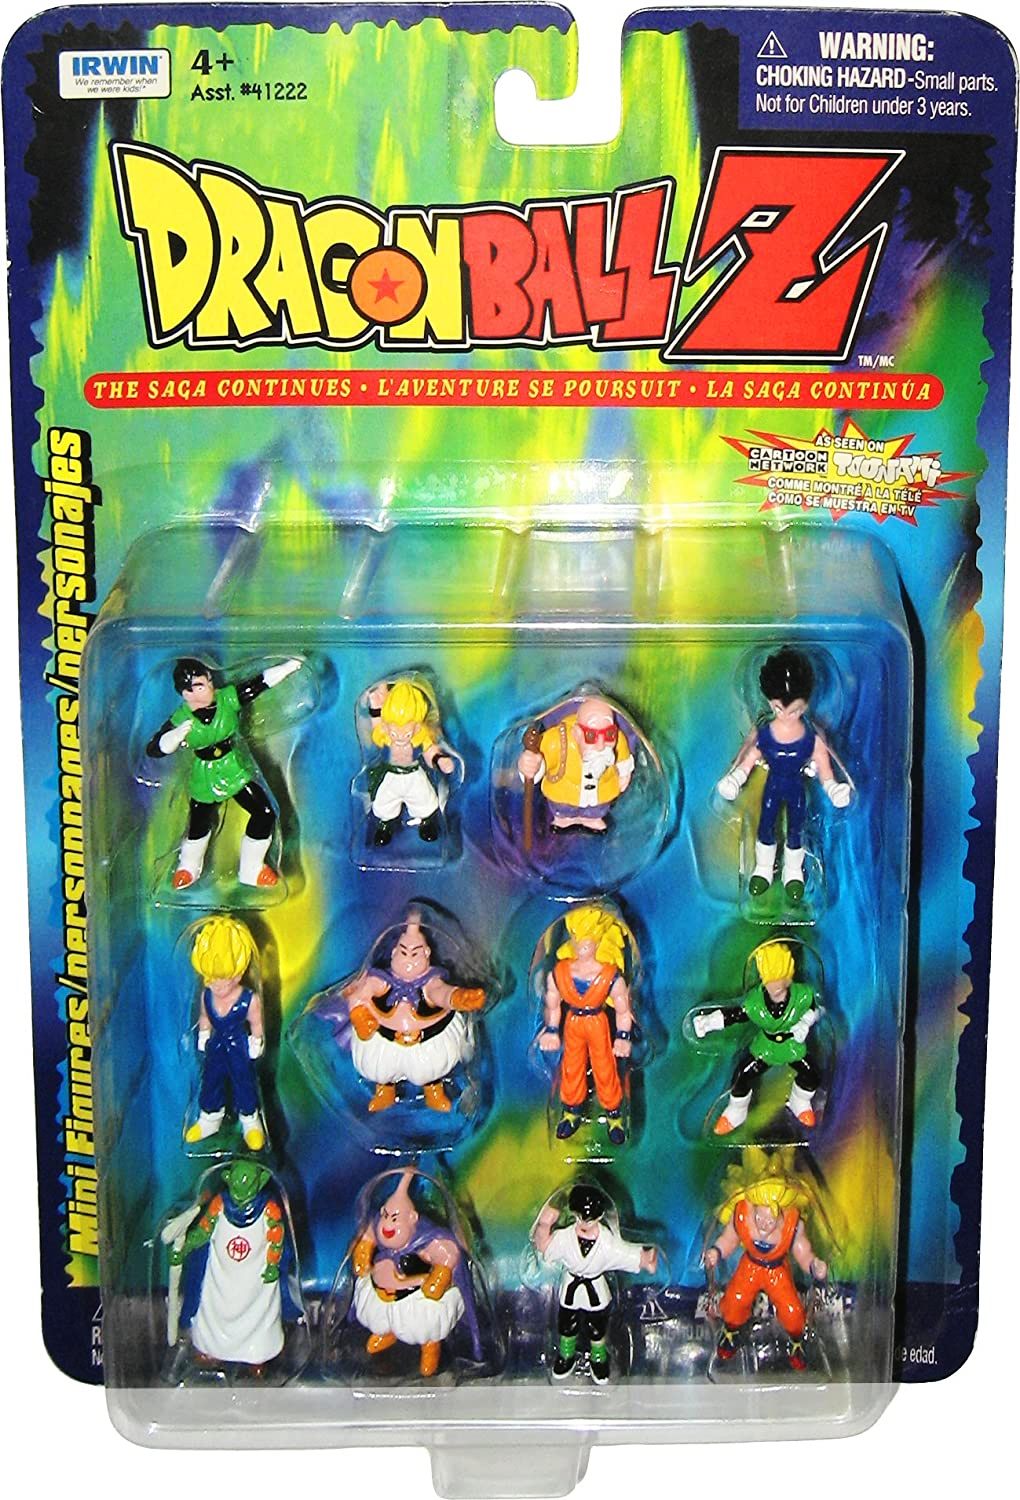 Dragon ball Z Lawson Limited Monument Figures 15 pcs complete Lot set toy DBZ